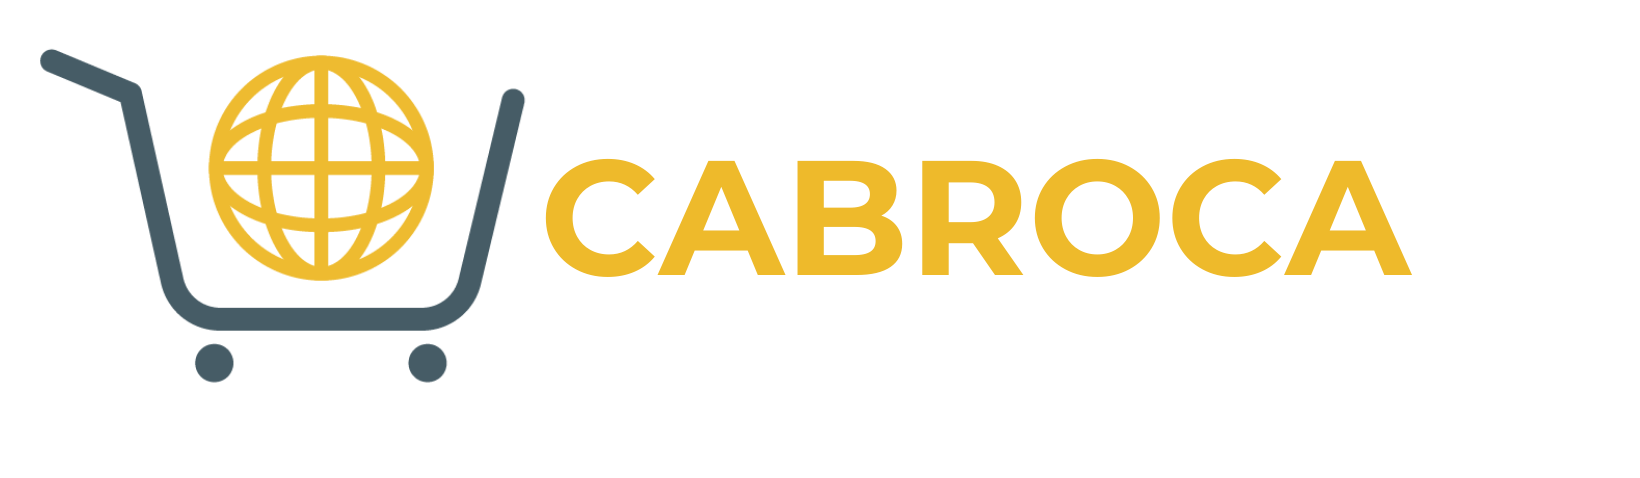 Cabroca